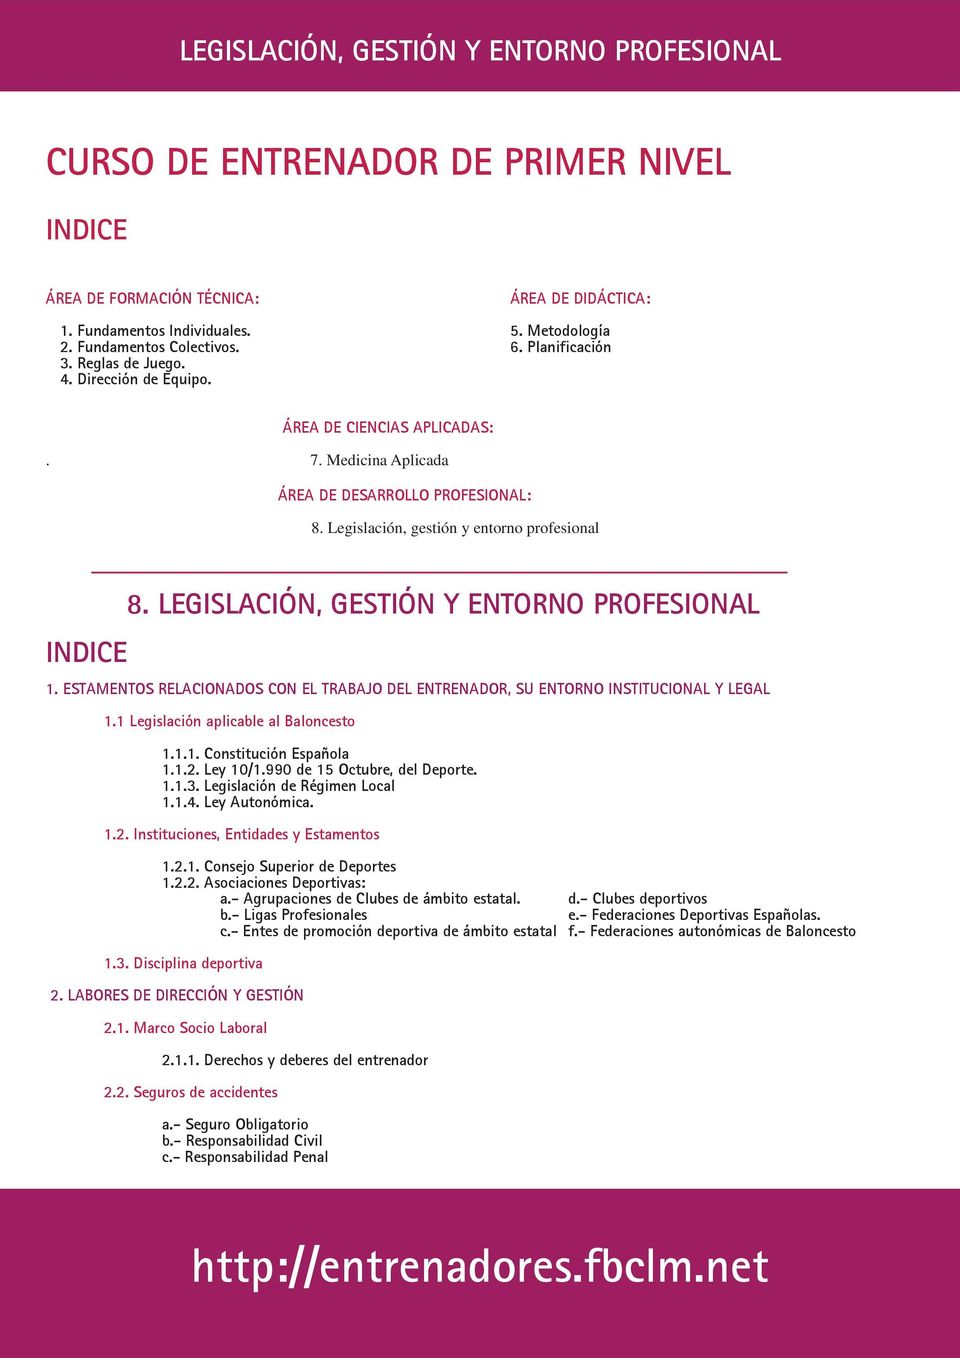 LEGISLACIÓN, GESTIÓN Y ENTORNO PROFESIONAL 1. ESTAMENTOS RELACIONADOS CON EL TRABAJO DEL ENTRENADOR, SU ENTORNO INSTITUCIONAL Y LEGAL 1.1 Legislación aplicable al Baloncesto 1.1.1. Constitución Española 1.